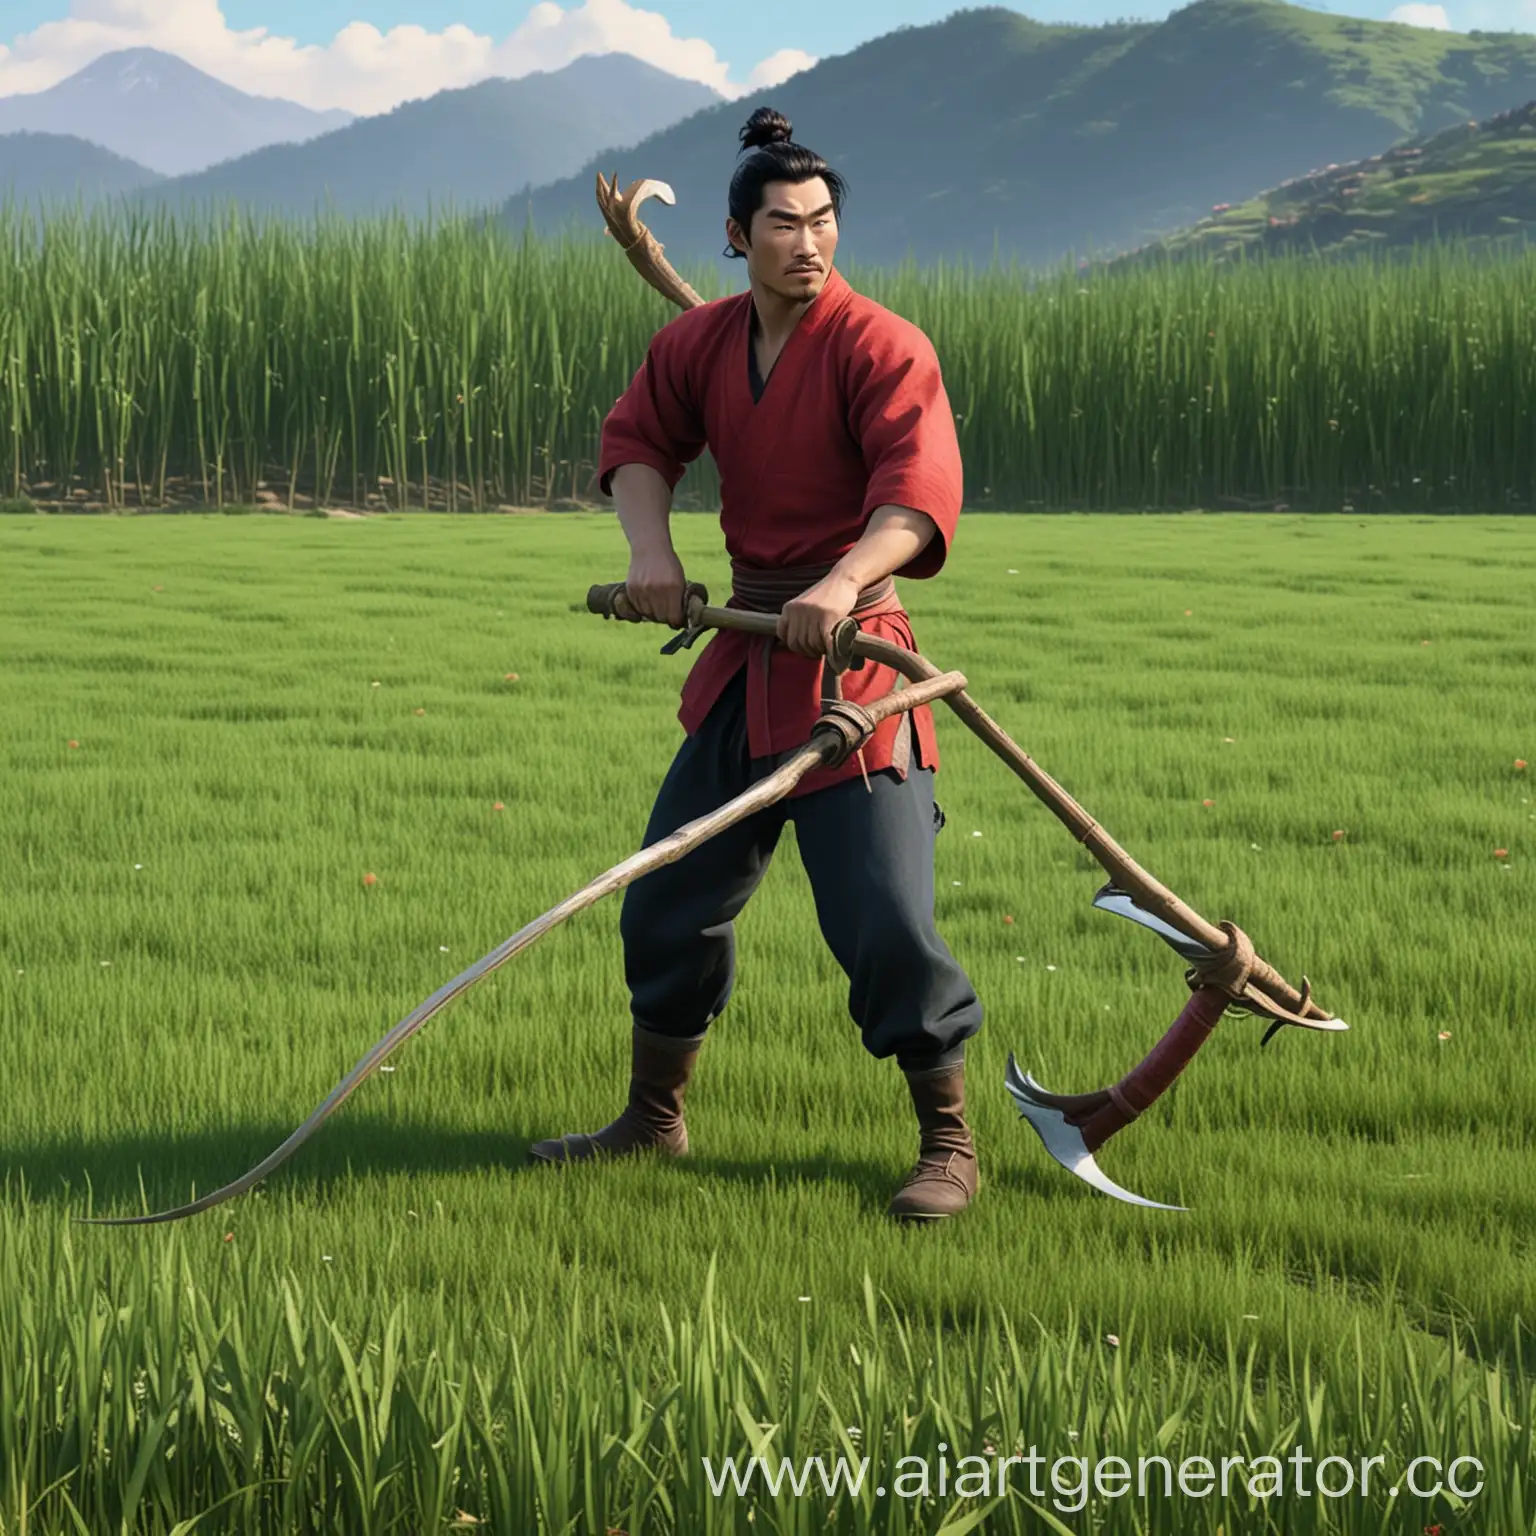 мужчина из мультика Мулан косит траву косой в поле